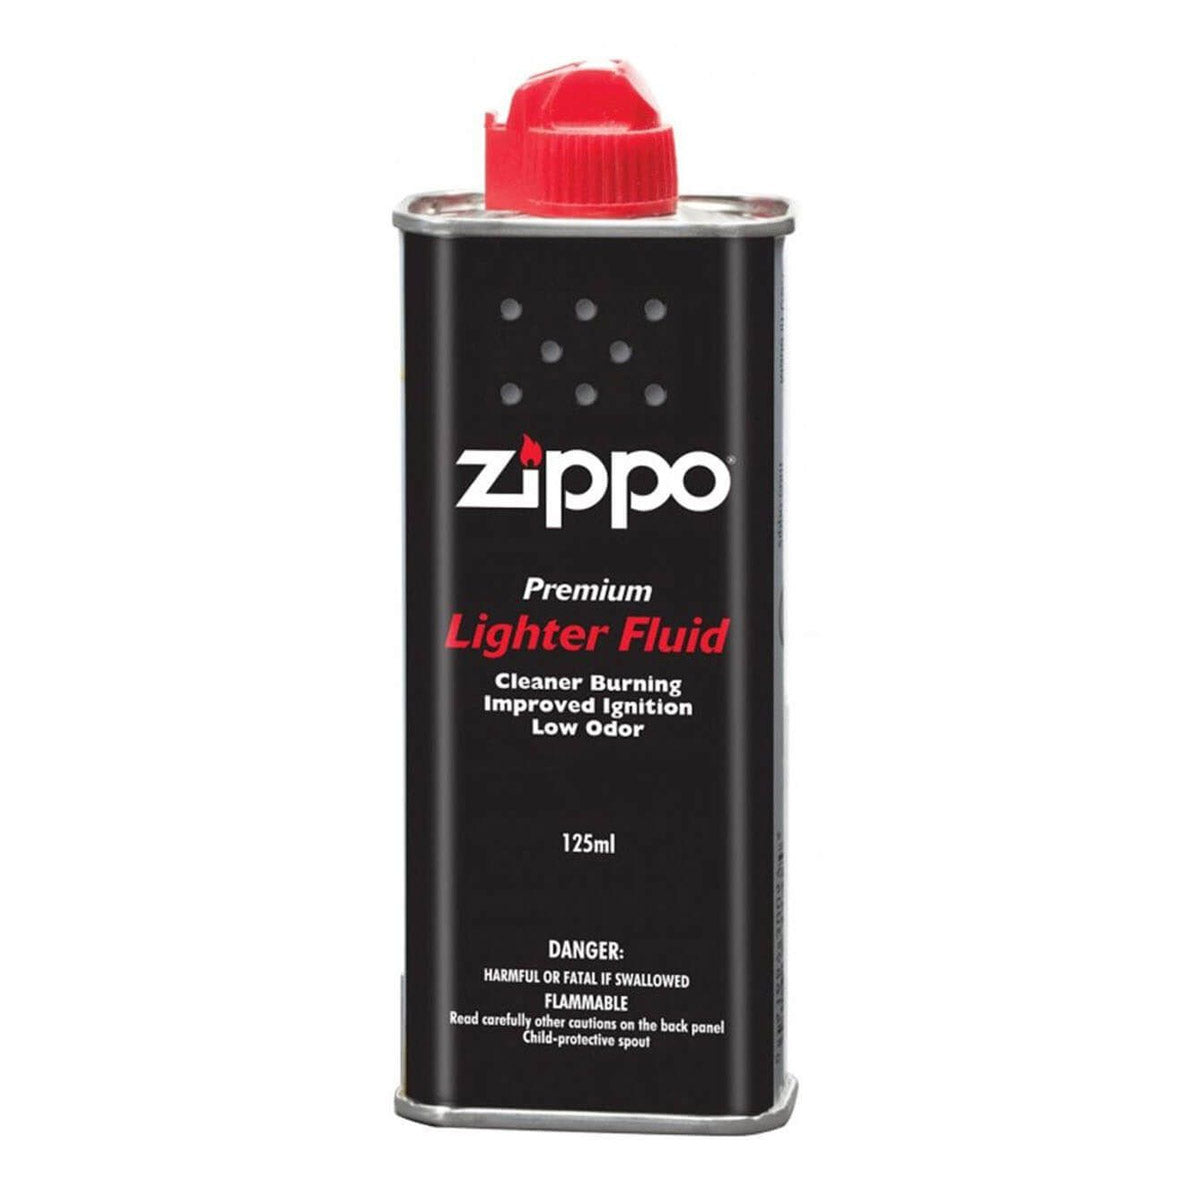 Zippo Lighter Fluid 125ml x 24 cans